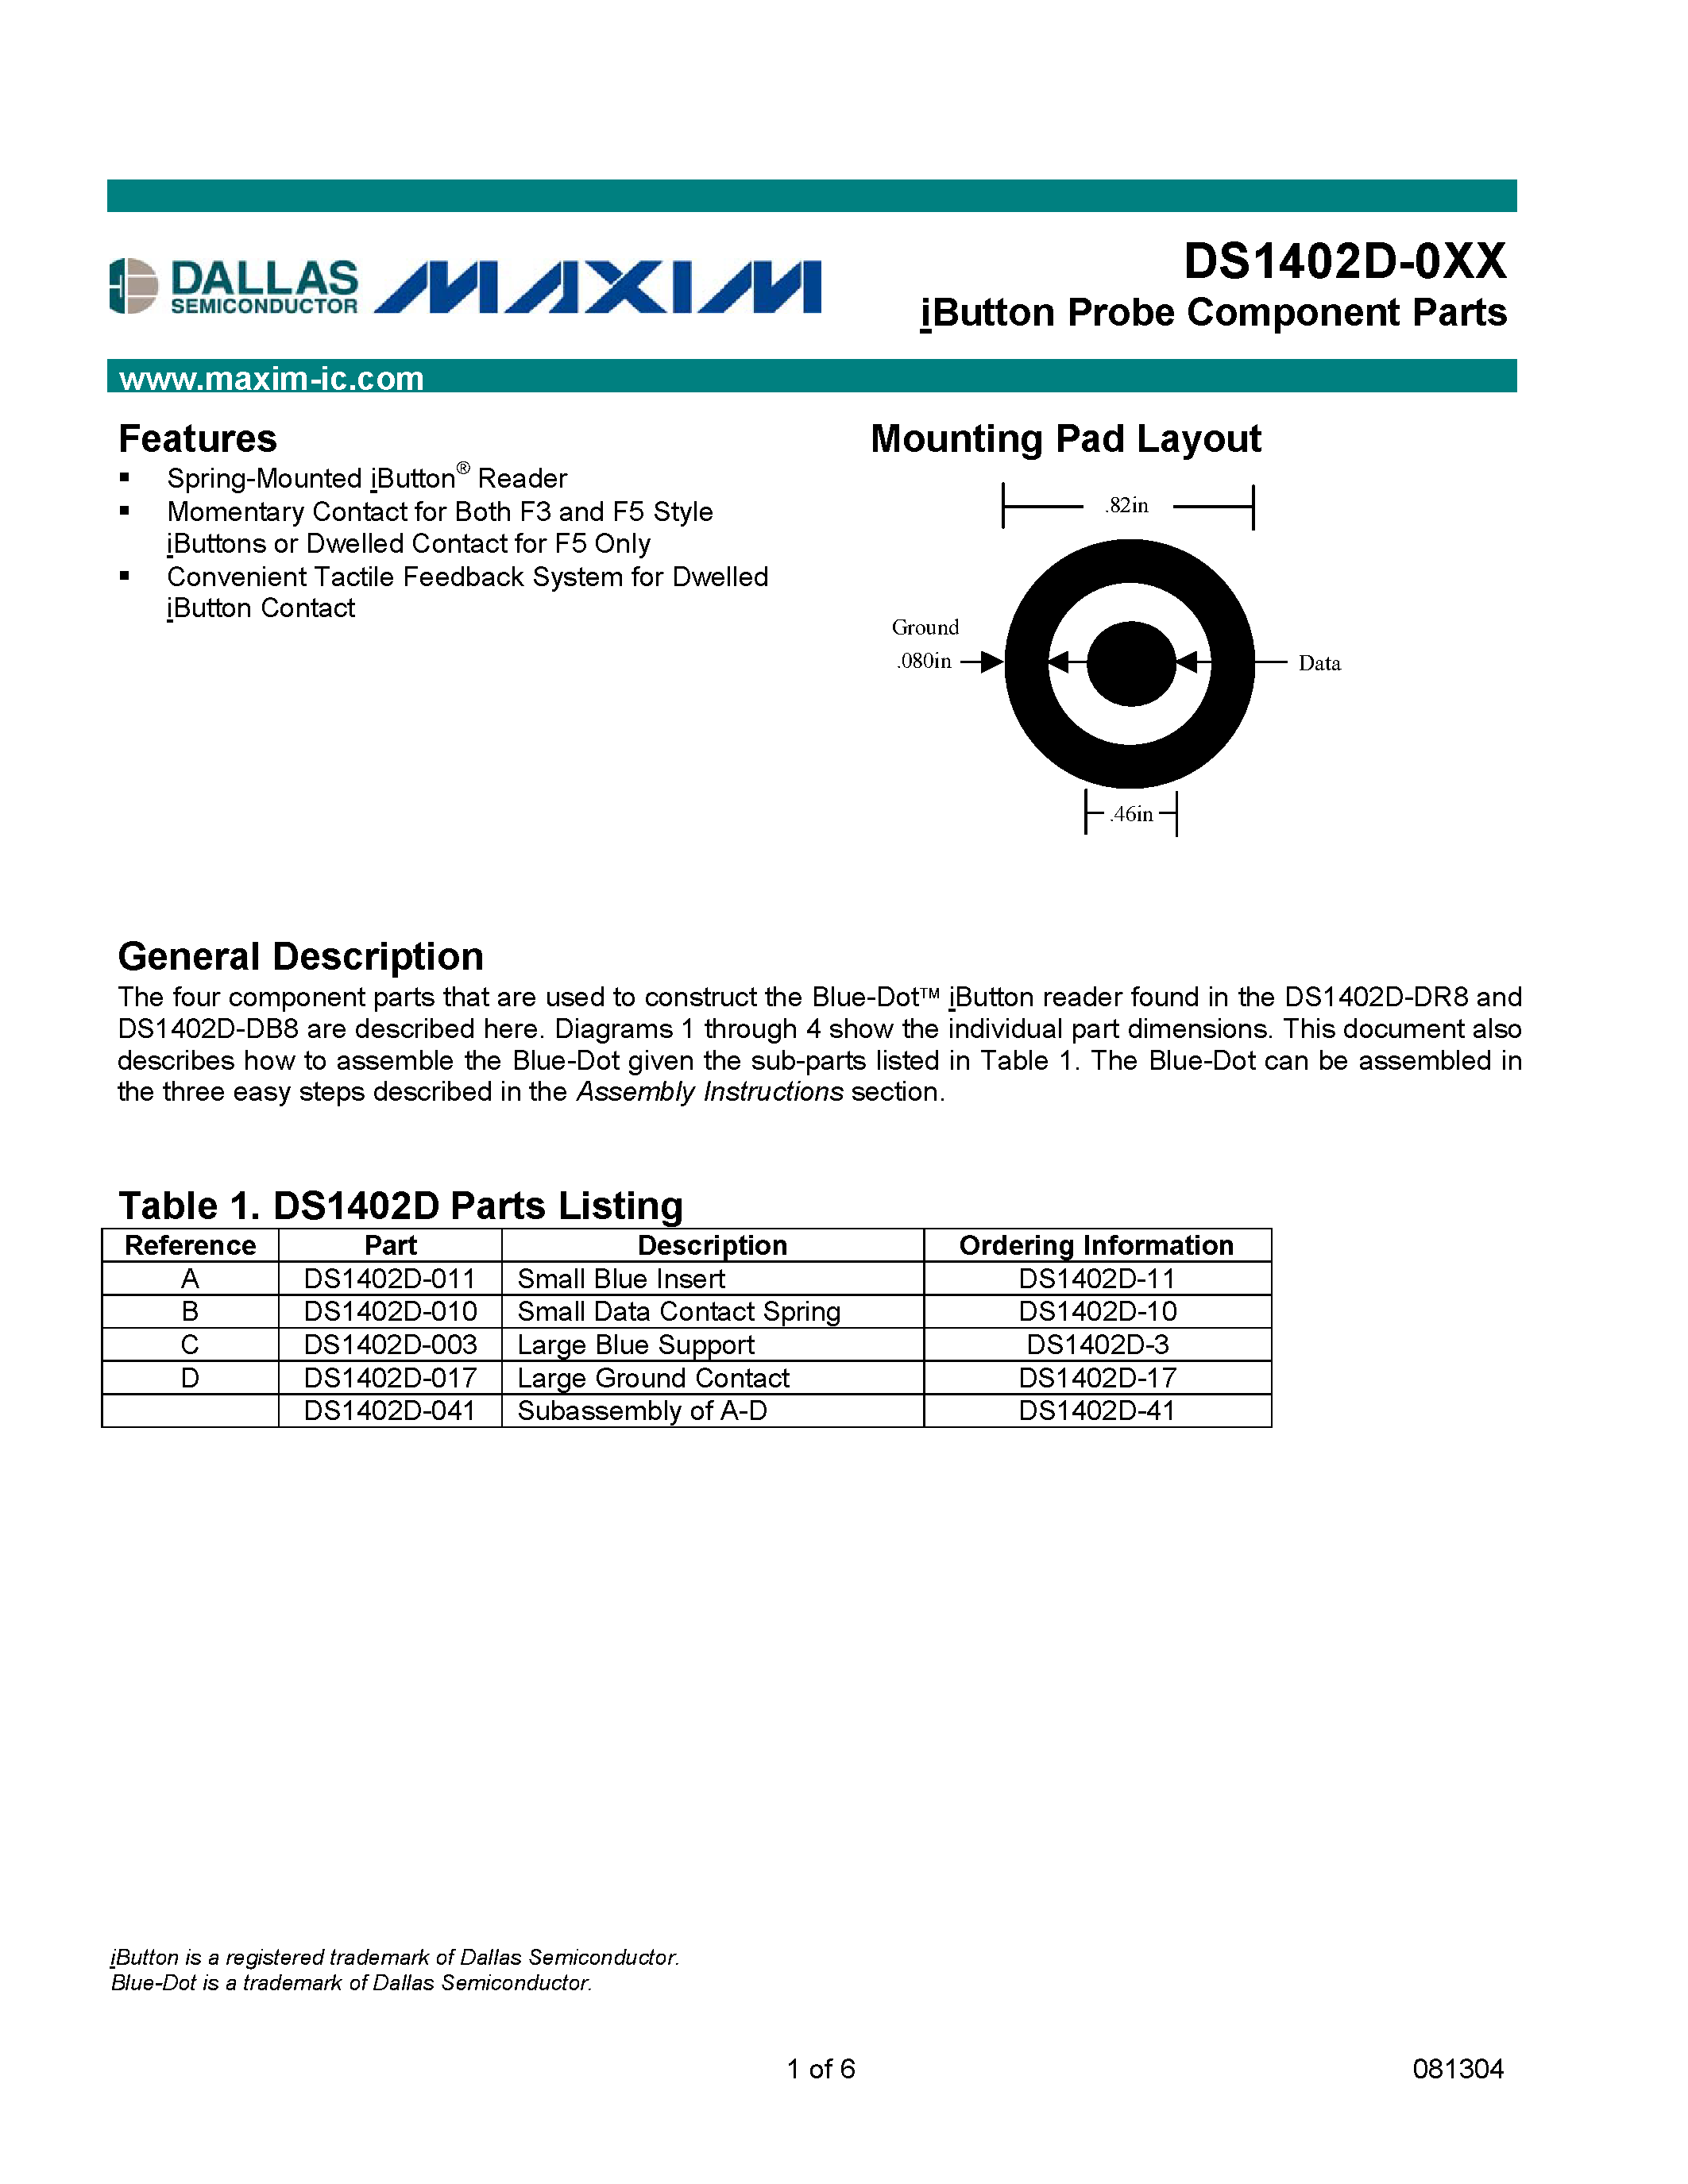 Даташит DS1402D-041 - iButton Probe Component Parts страница 1